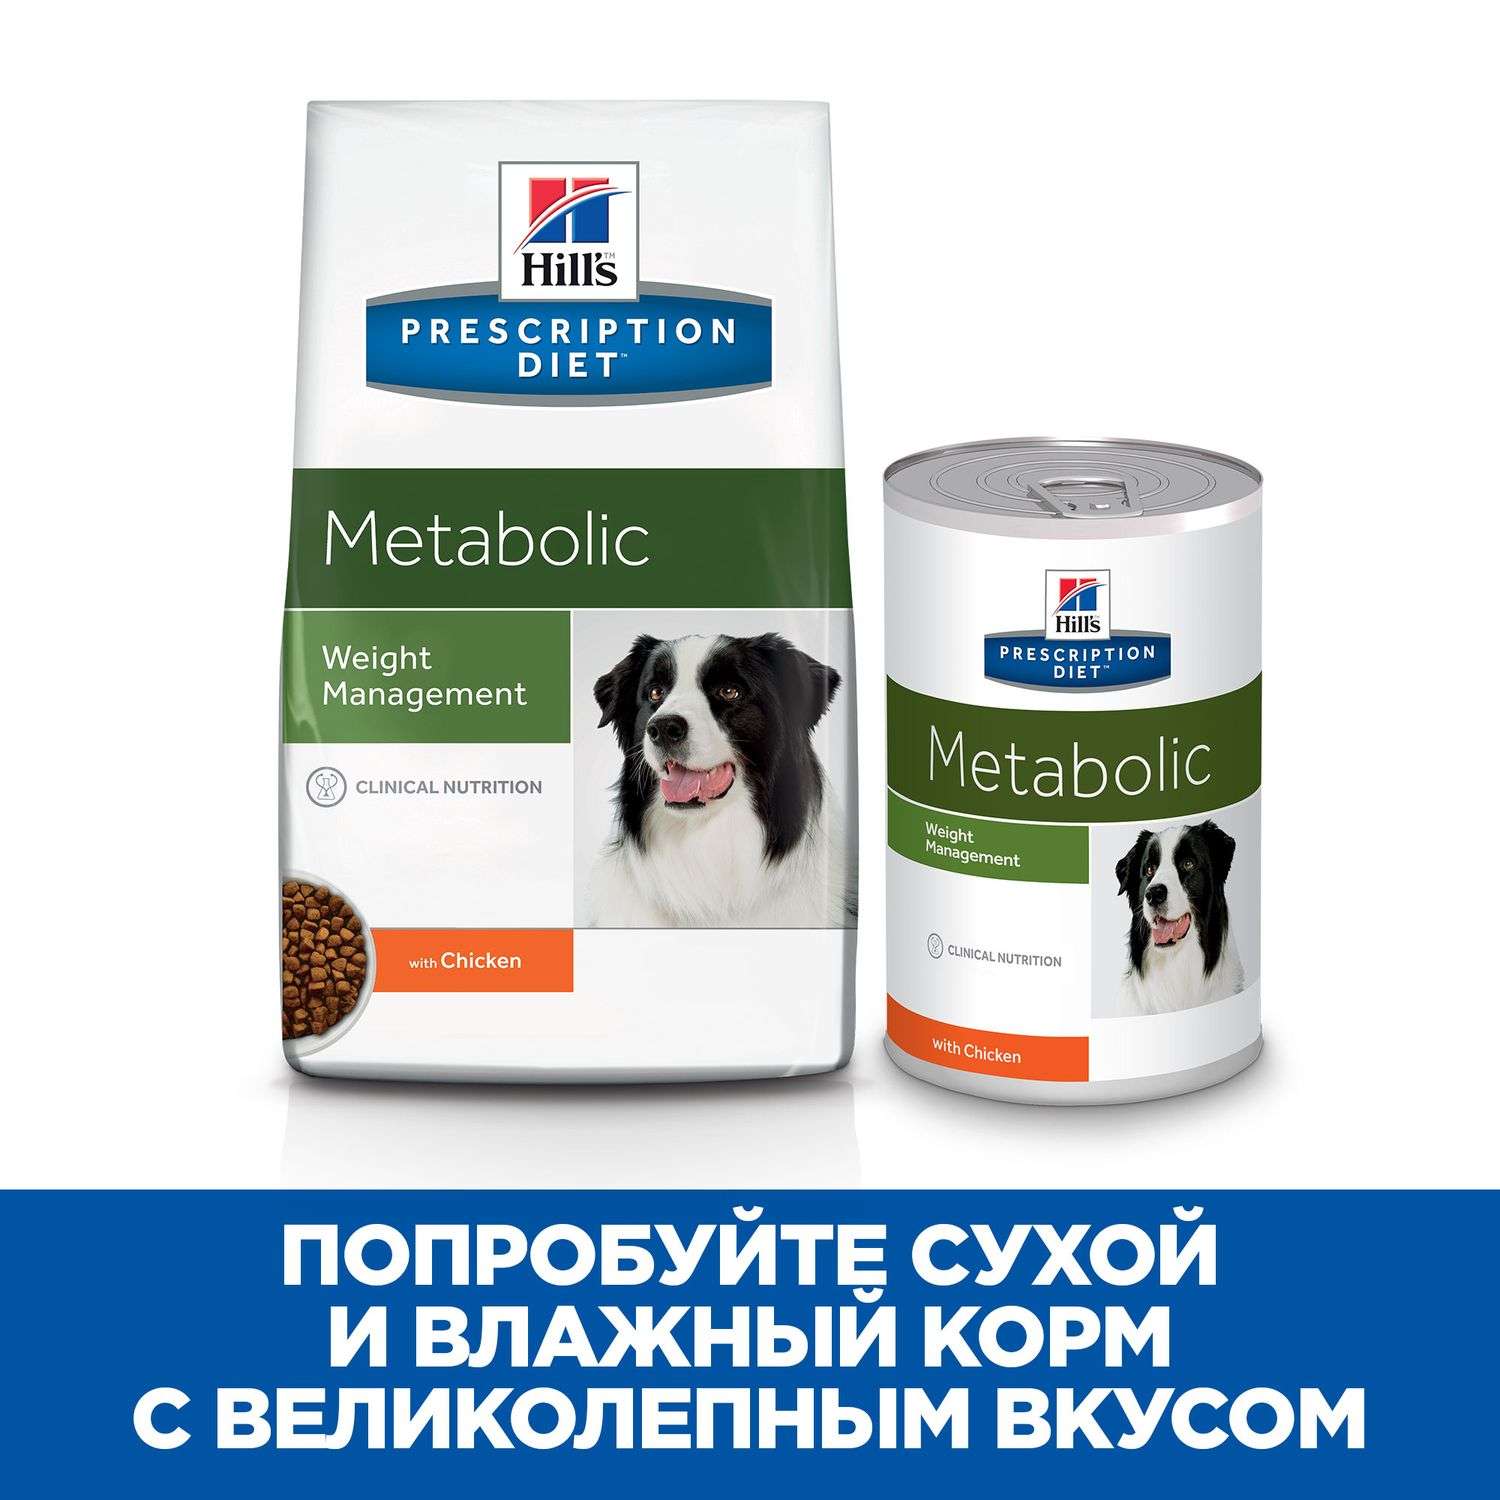 Корм для собак HILLS 1.5кг Prescription Diet MetabolicWeight Management для оптимального веса с курицей сухой - фото 7